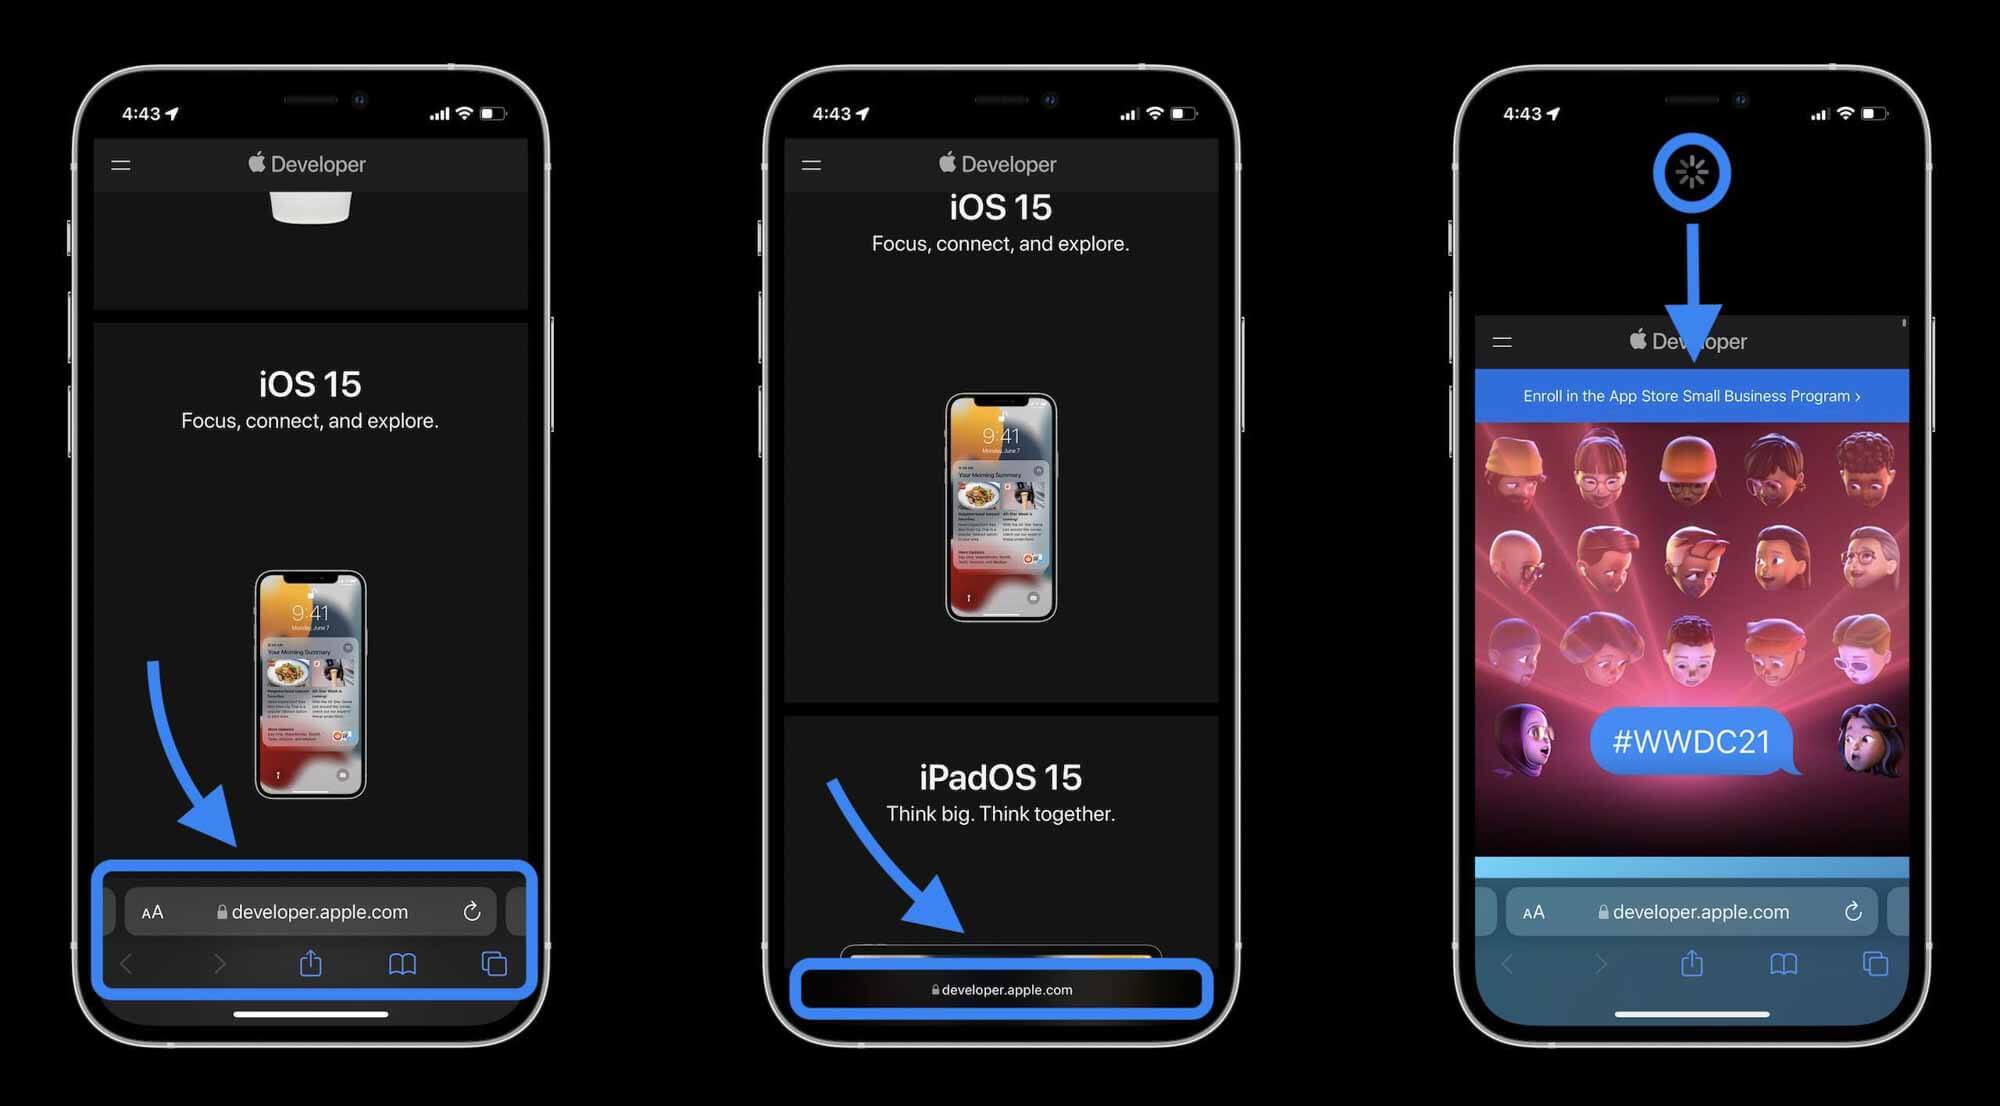 Как Safari в iOS 15 работает с макетом и навигацией - коснитесь панели поиска или проведите пальцем вверх по панели вкладок, затем коснитесь значка +, чтобы открыть новый